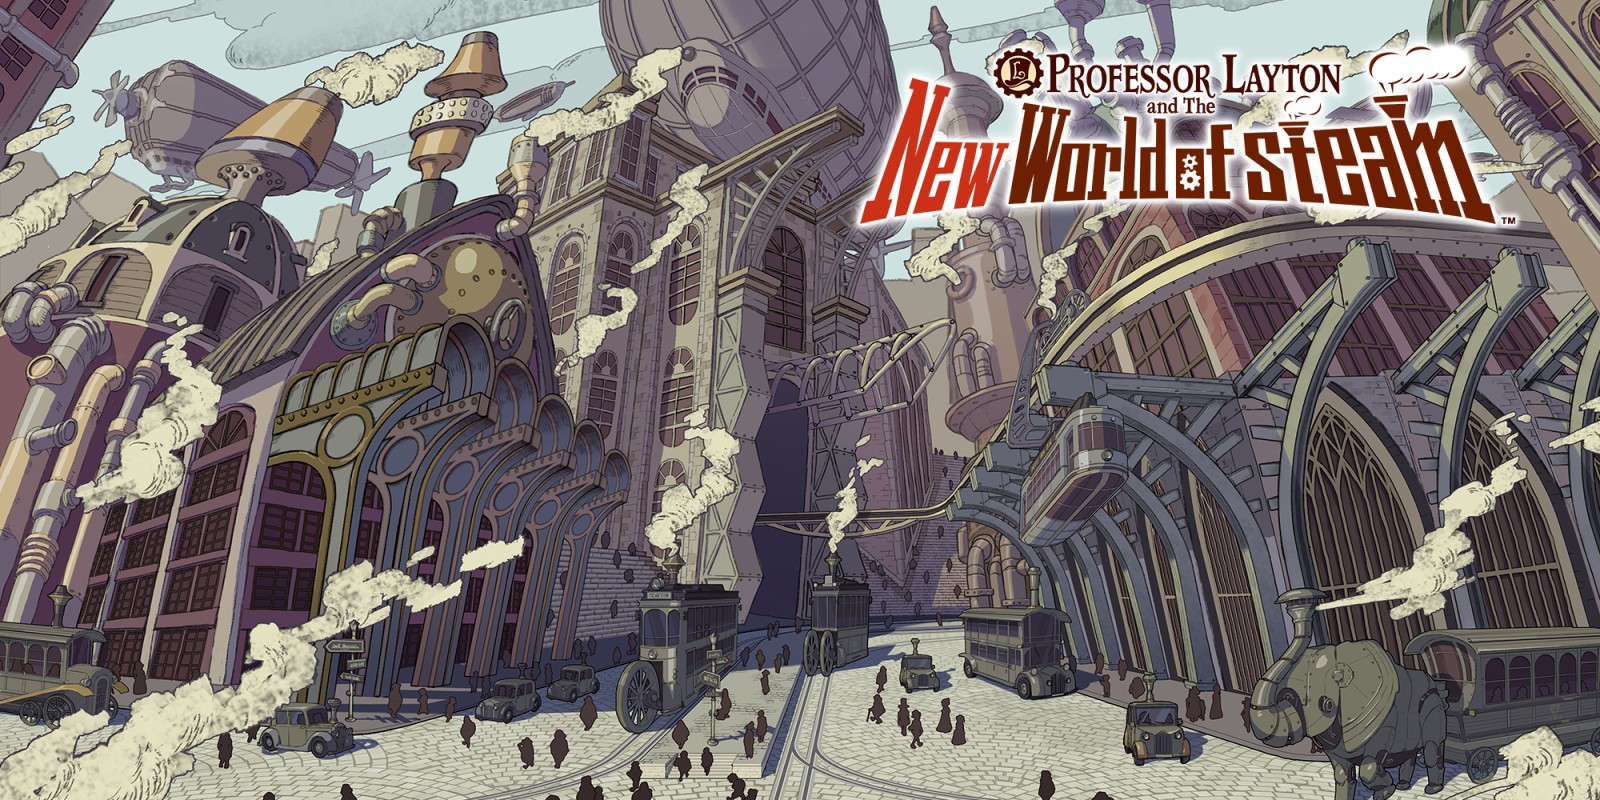 Bekijk de Professor Layton and the New World of Steam-aankondiging